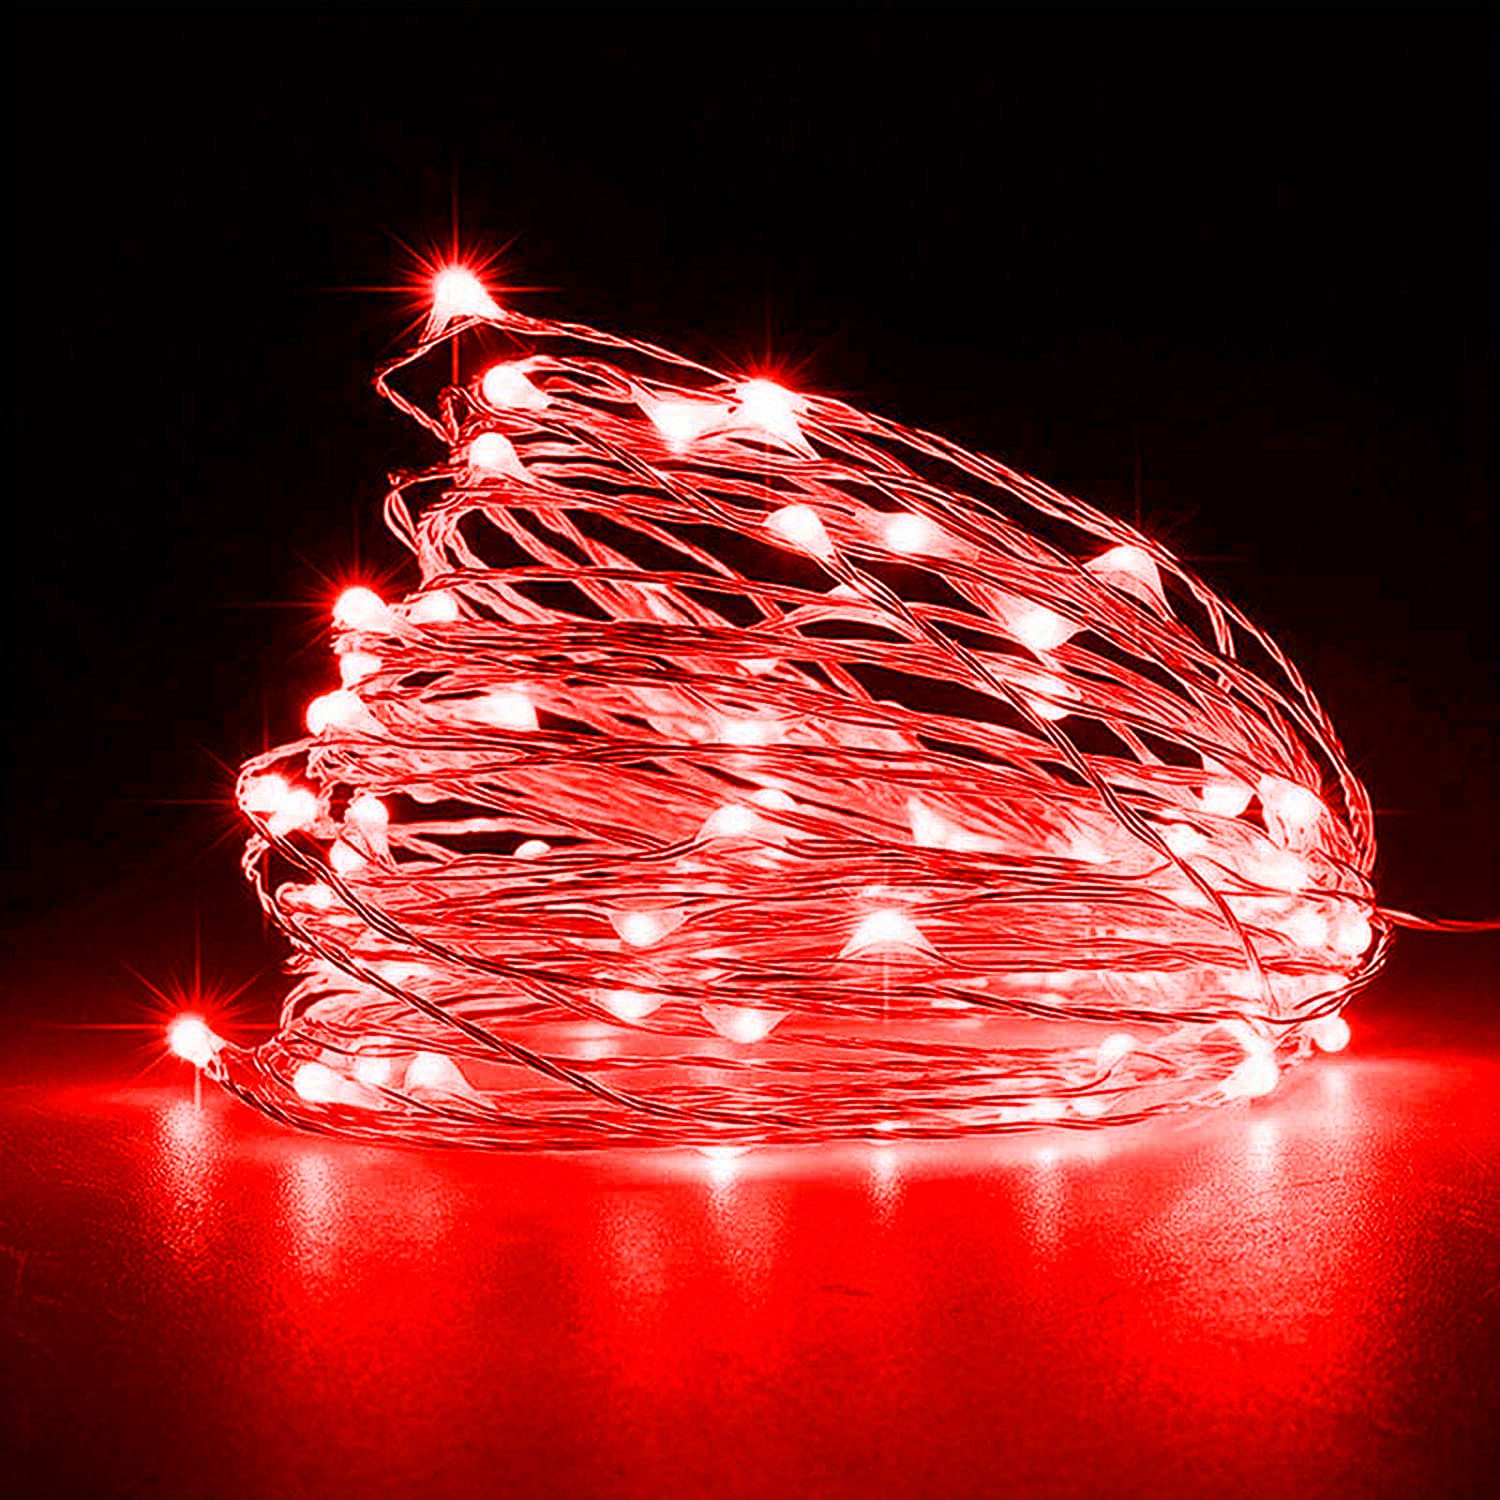 Lihiton - Luces de hadas con pilas, 2 paquete de mini 3AAA con pilas,  alambre de cobre, luces LED de cadena estrellada, dormitorio, Navidad,  fiestas